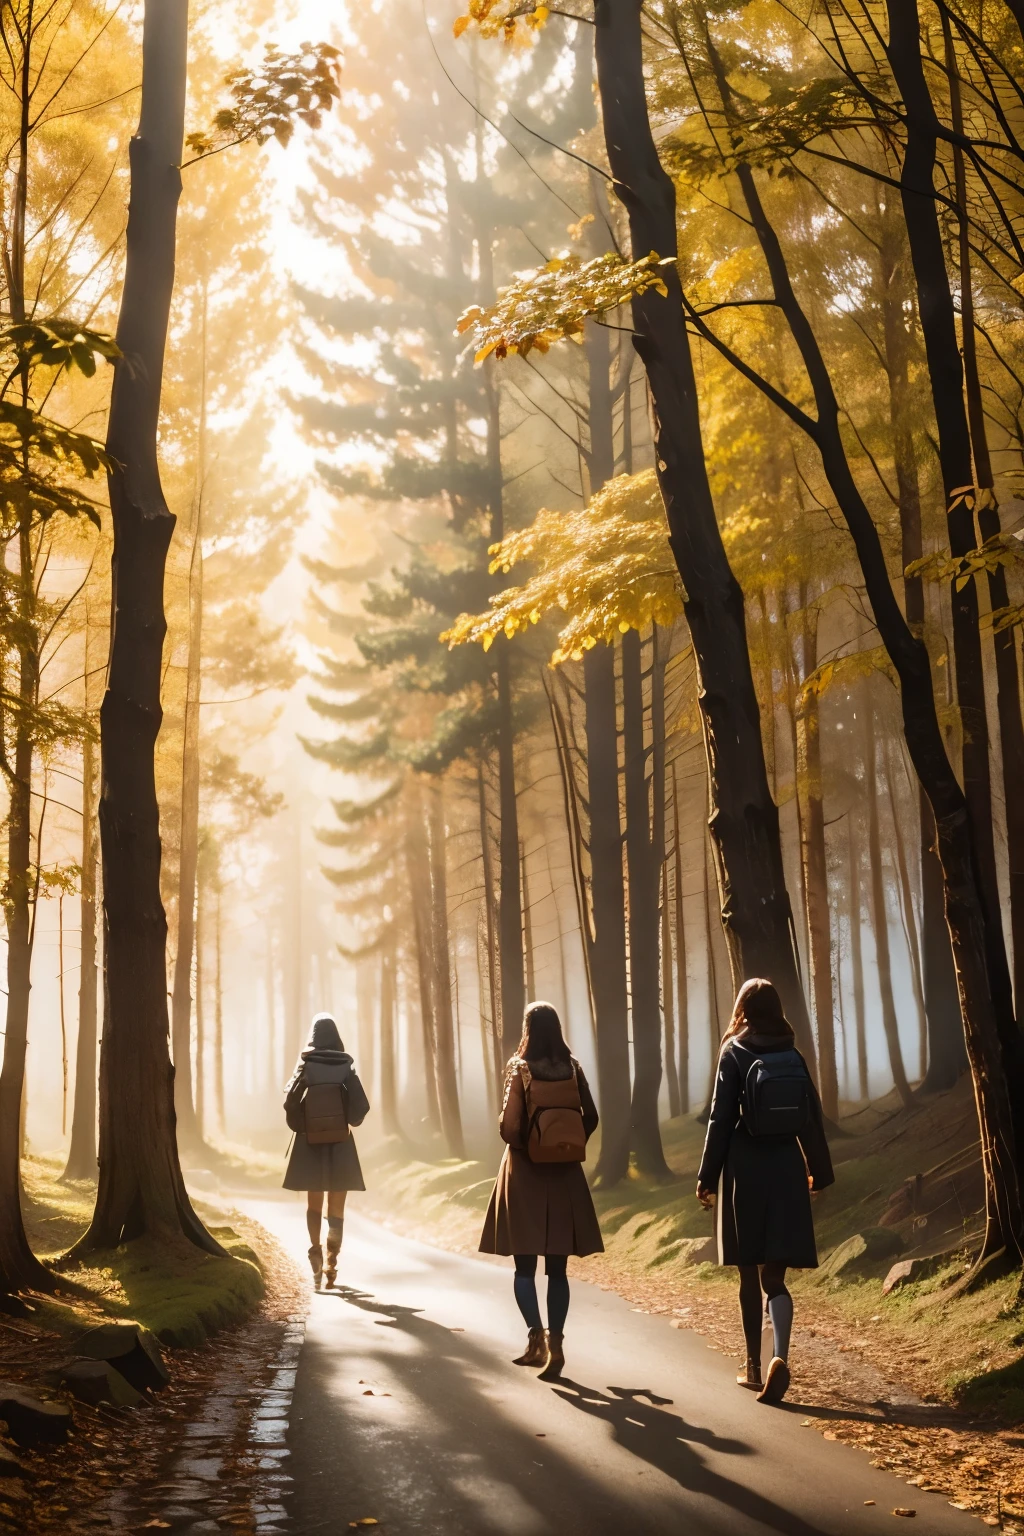 숲속의 길에 있는 세 소녀, 안개, 가을 풍경, sunlight filtering through the 안개 and branches